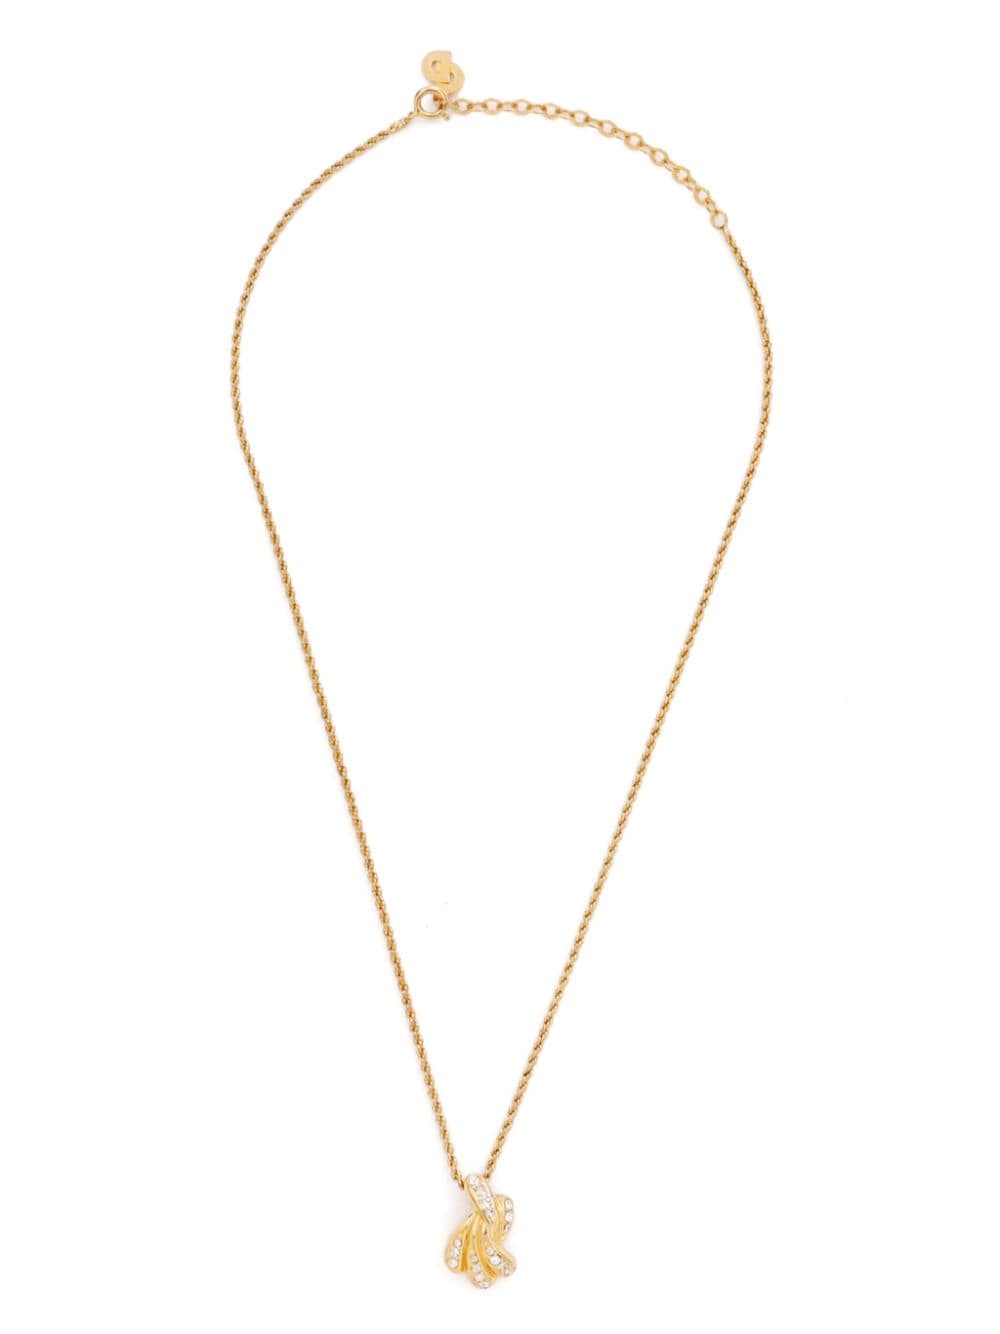 Christian Dior Pre-Owned Halskette mit strassverziertem Anhänger - Gold von Christian Dior Pre-Owned